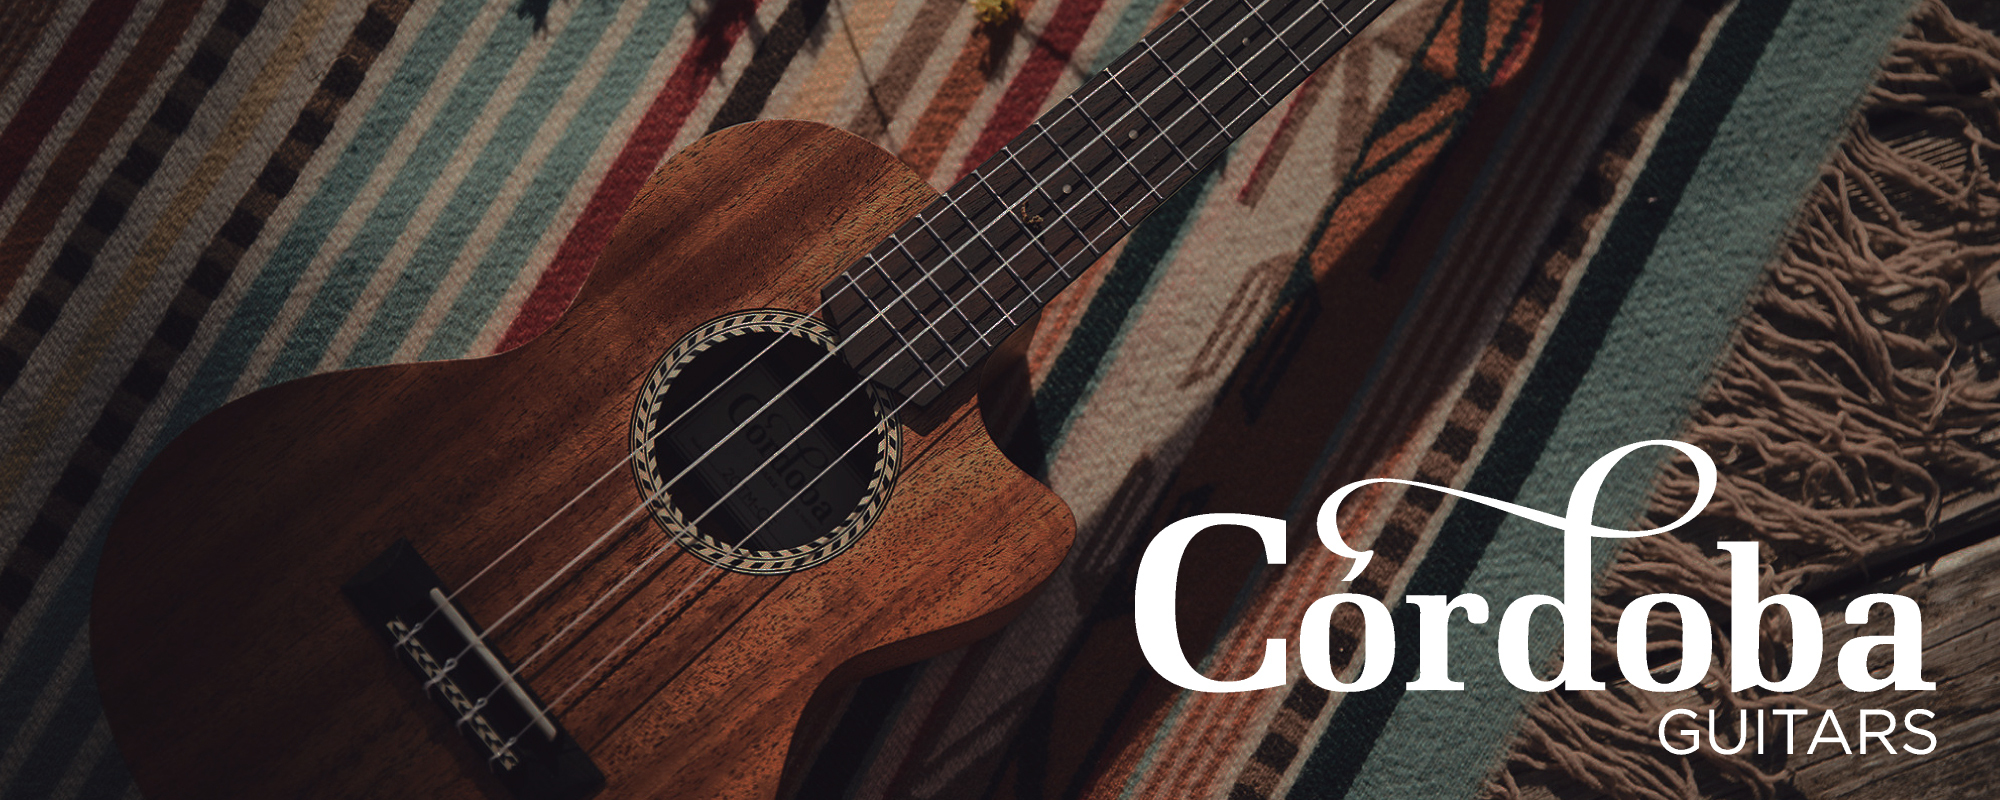 スパニッシュギターの伝統を受け継いだギター&ウクレレブランド、Cordoba（コルドバ）のウクレレを期間限定展示販売いたします！独創的かつ伝統的なスタイルのウクレレを、ぜひお手に取って確かめてみてください。今回、お客様からご要望の多かったテナーサイズを新たに導入いたしました。 Cordoba(コルド […]